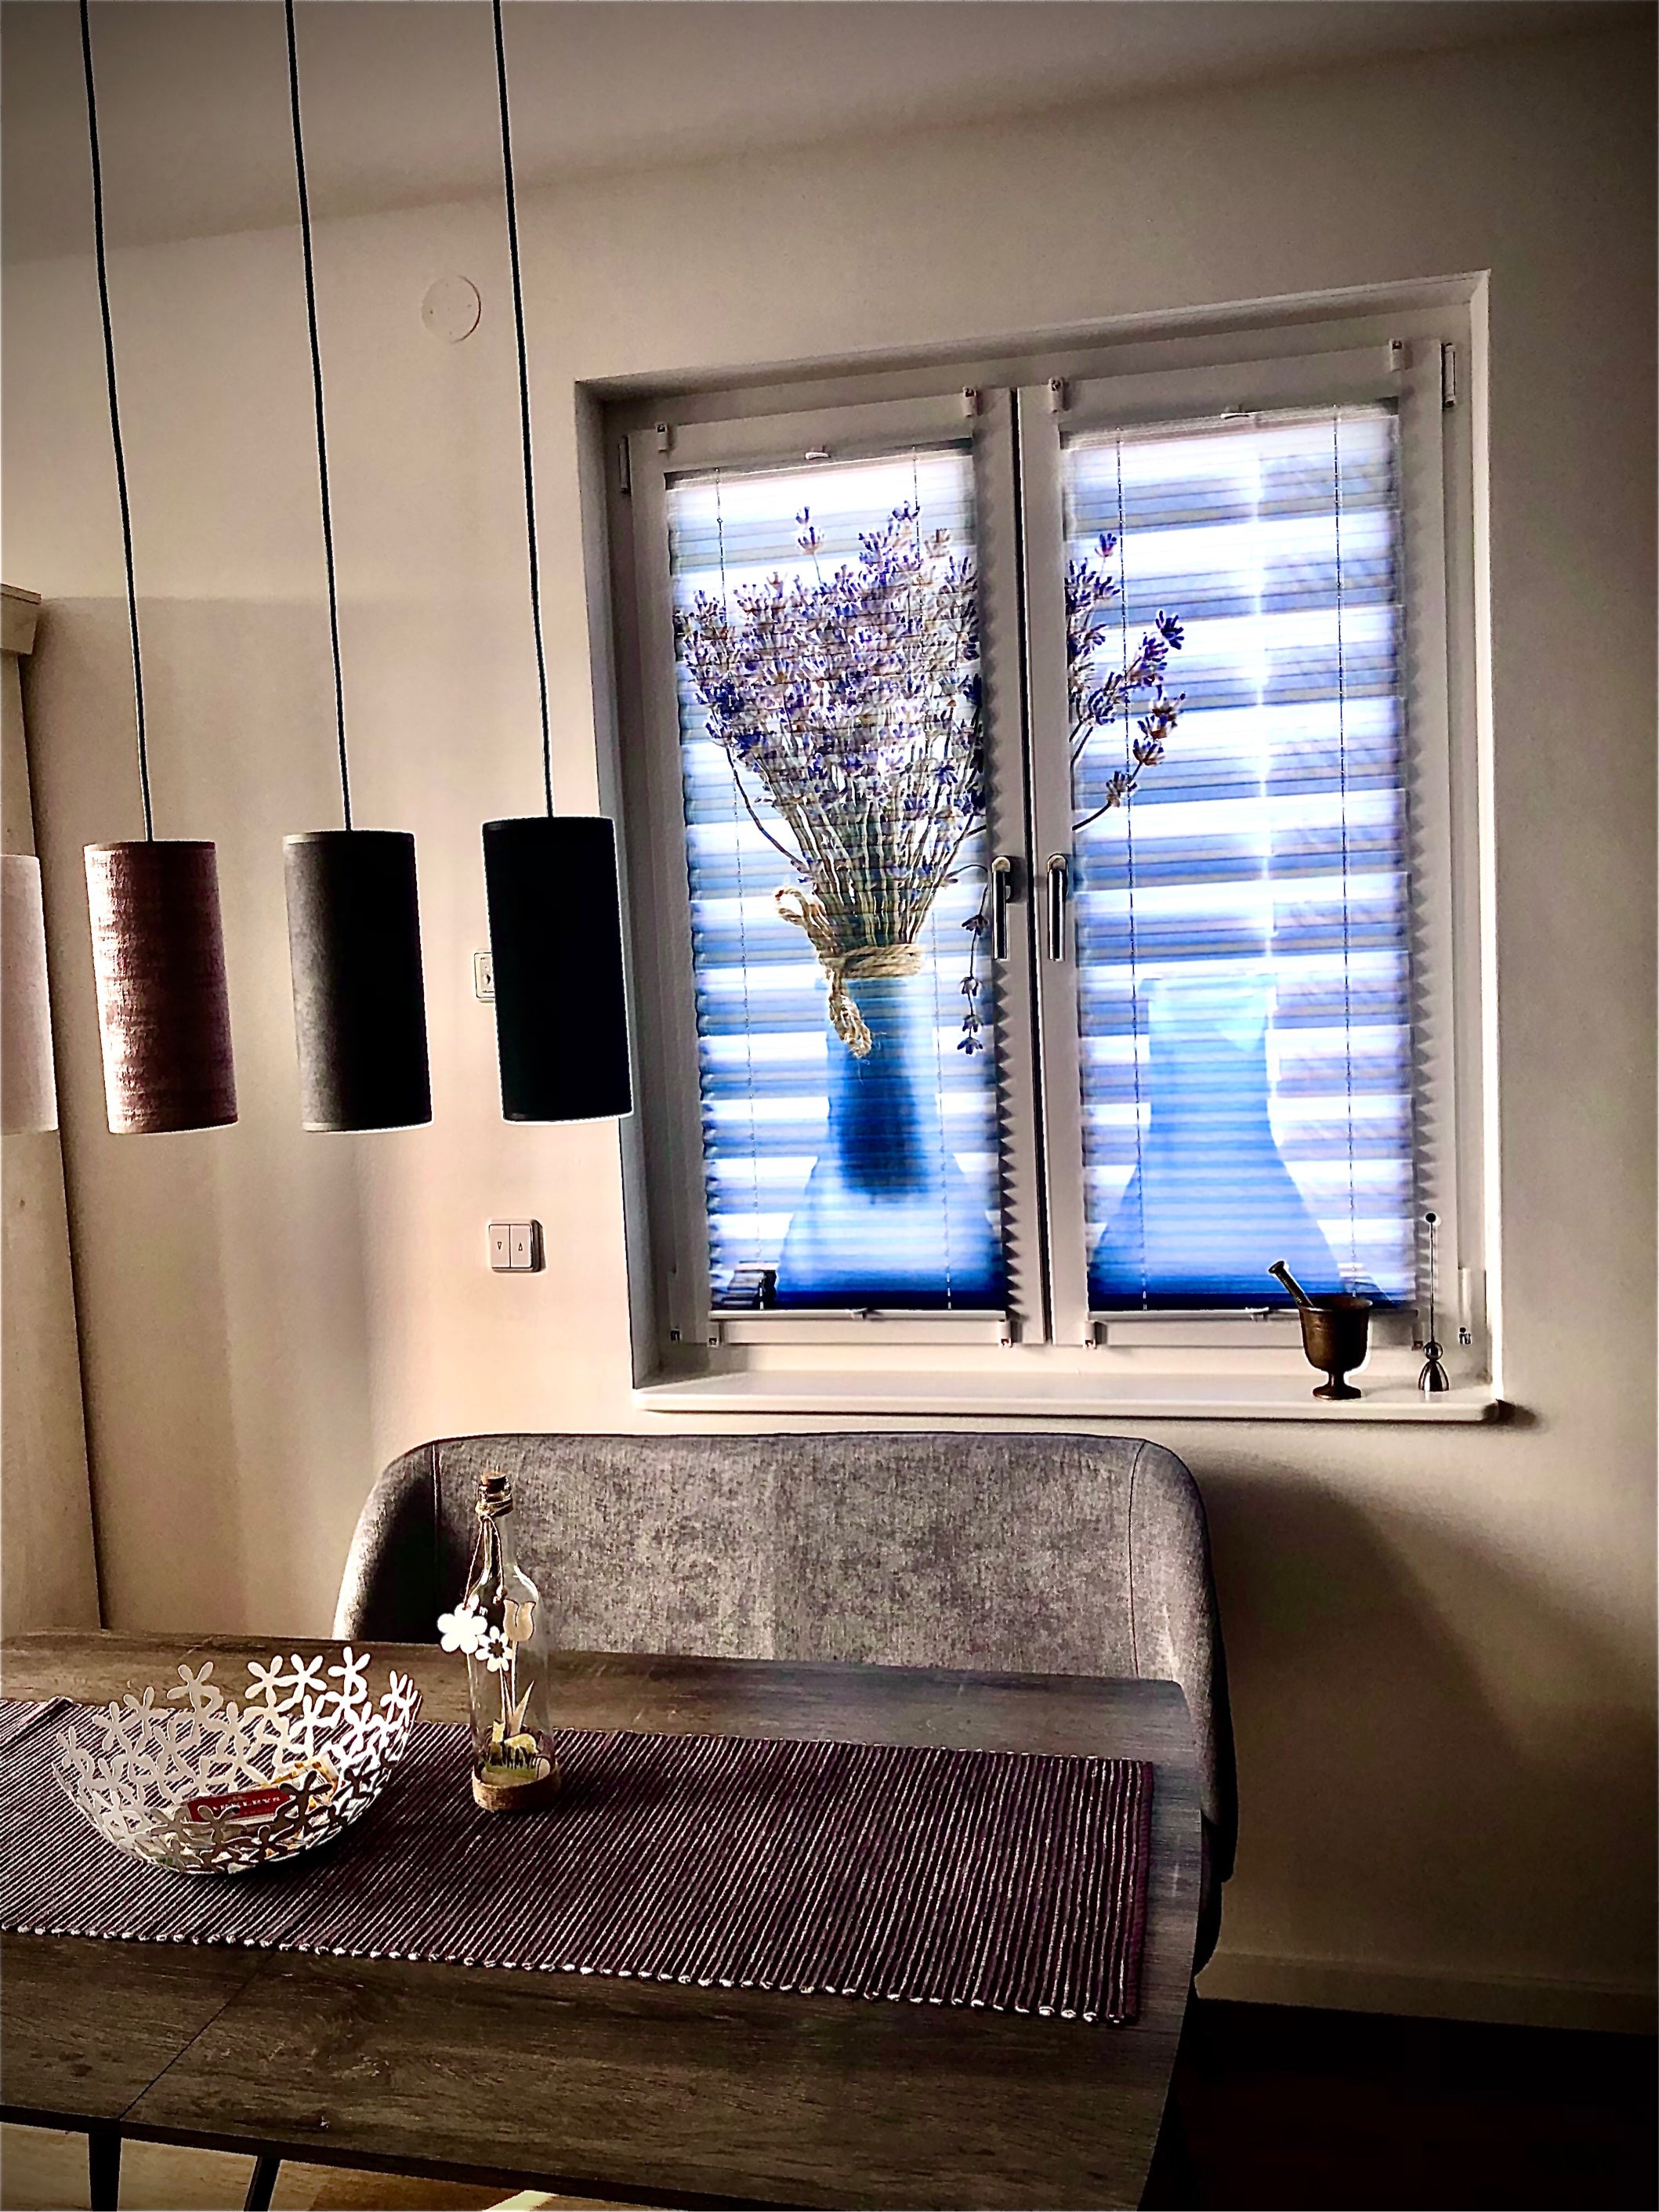 Foto-Plissee zweiteilig bedruckt mit Lavendelstrauß in der Küche am Fenster mit Tageslicht von vorn beleuchtet 